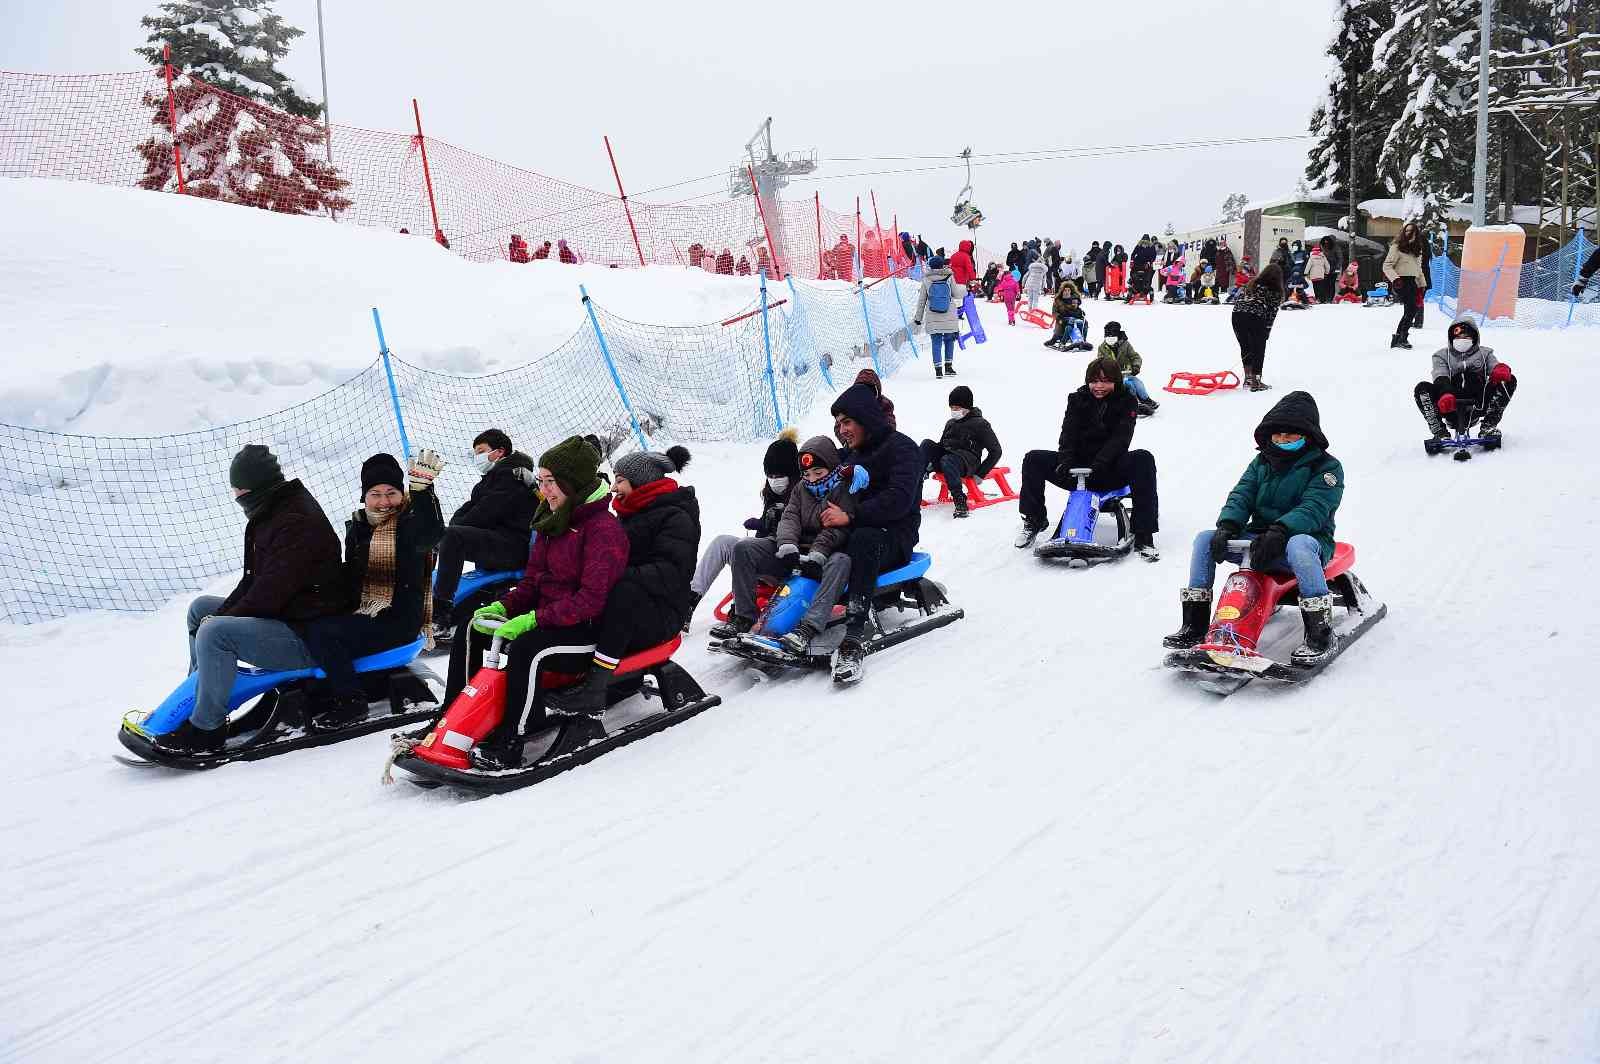 “Kepçeci abi kürümesen olmaz mı sözleriyle gündem olmuşlardı, o çocuklar kayak merkezine götürüldü #kastamonu